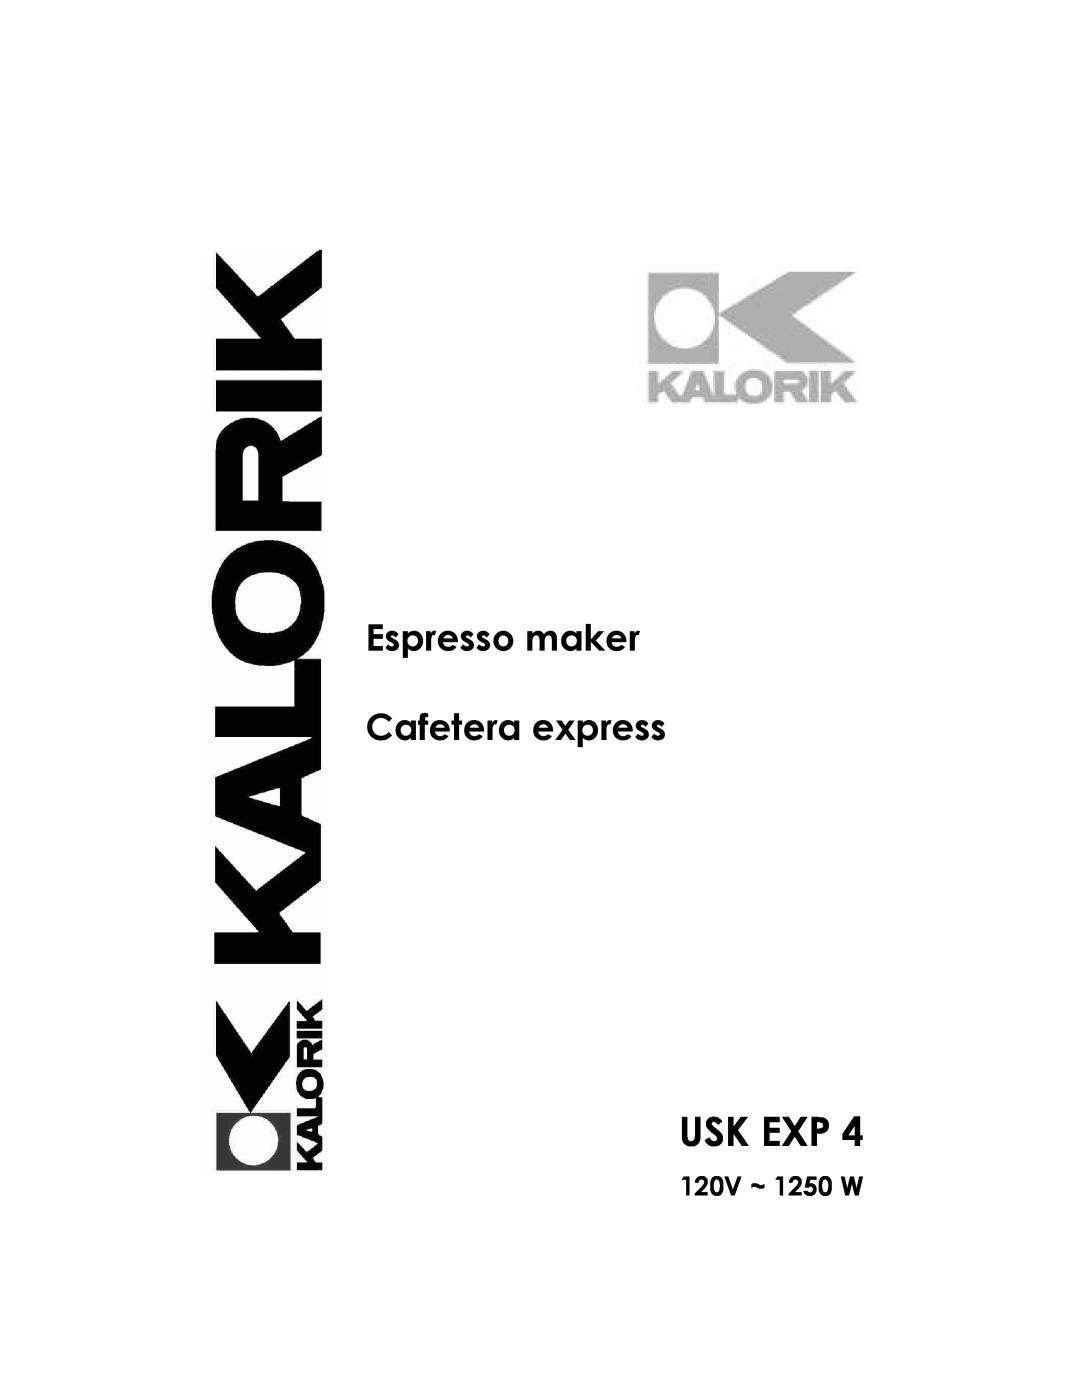 Kalorik USK EXP 4 manual Usk Exp, 120V ~ 1250 W, Espresso maker Cafetera express 